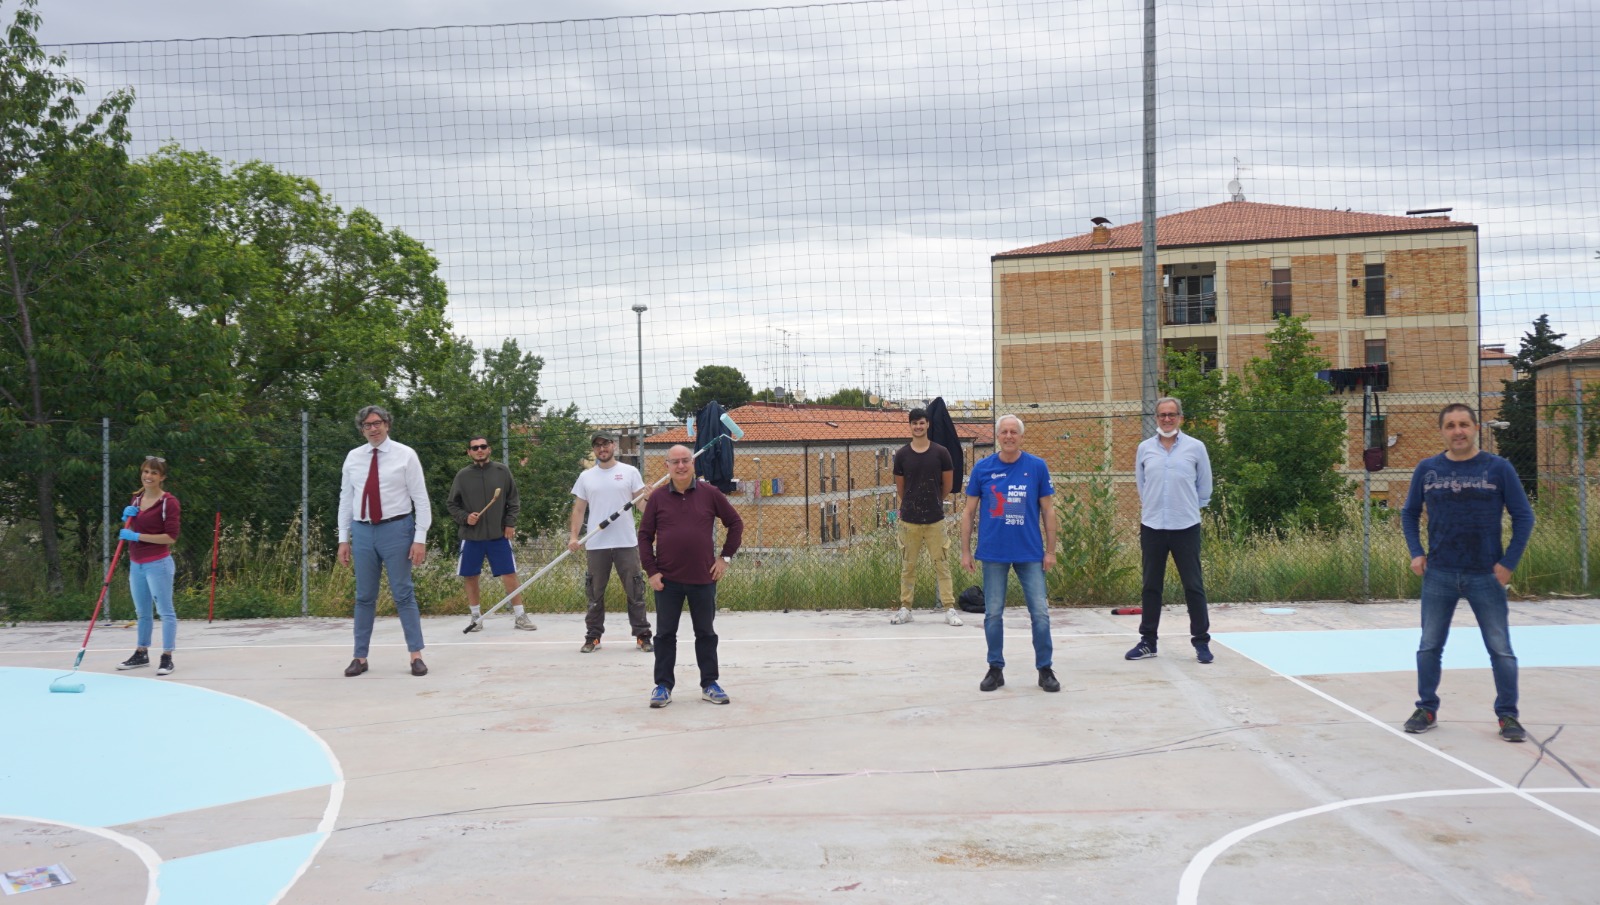 Sport e arte urbana per donare spazi alla comunità: Istituto Pascoli, Olimpia Basket Matera e Uisp insieme per riqualificare il campetto annesso al plesso scolastico di Via Parini